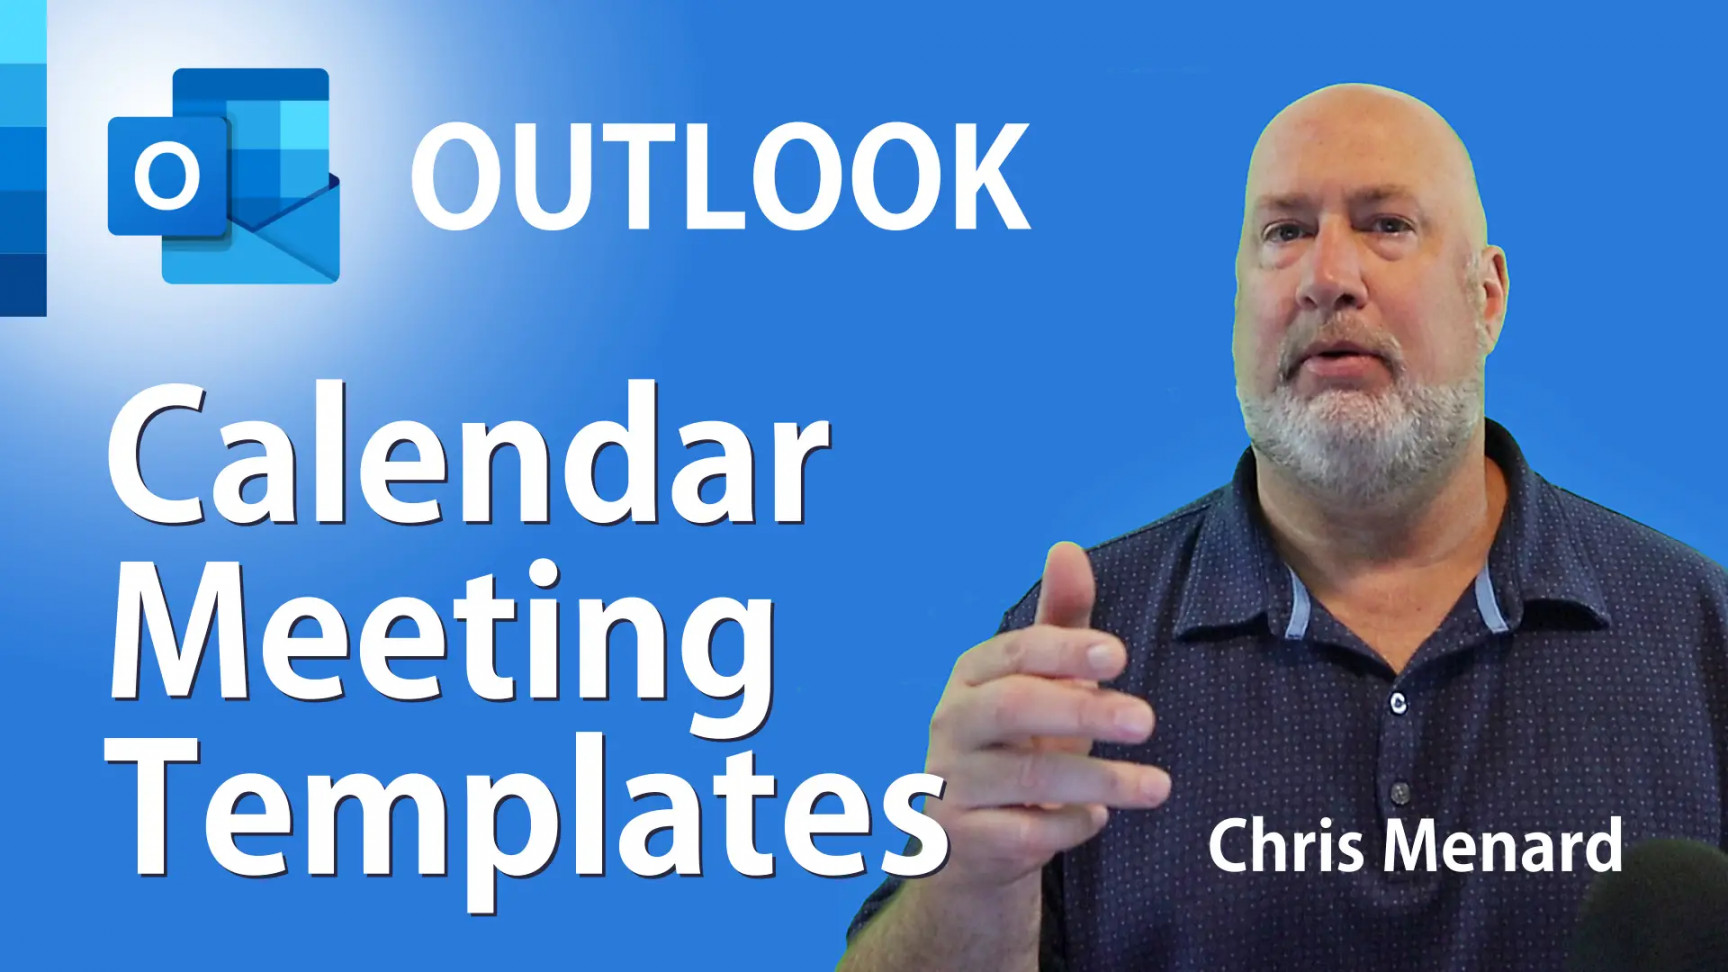 Outlook Calendar Meeting Template: Chris Menard Training